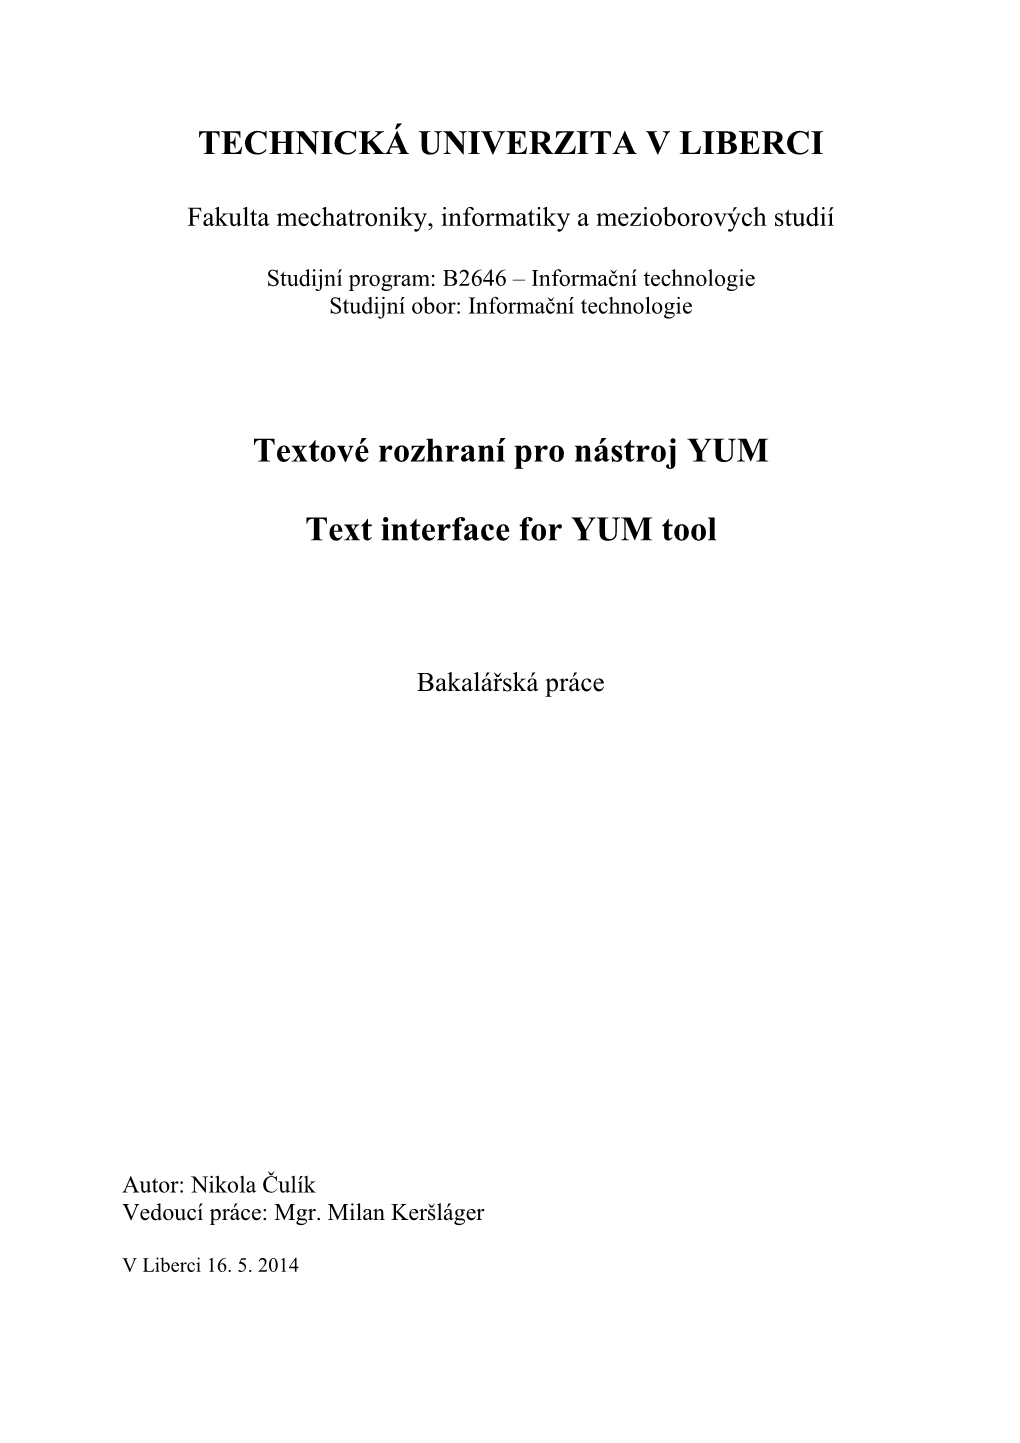 TECHNICKÁ UNIVERZITA V LIBERCI Textové Rozhraní Pro Nástroj YUM